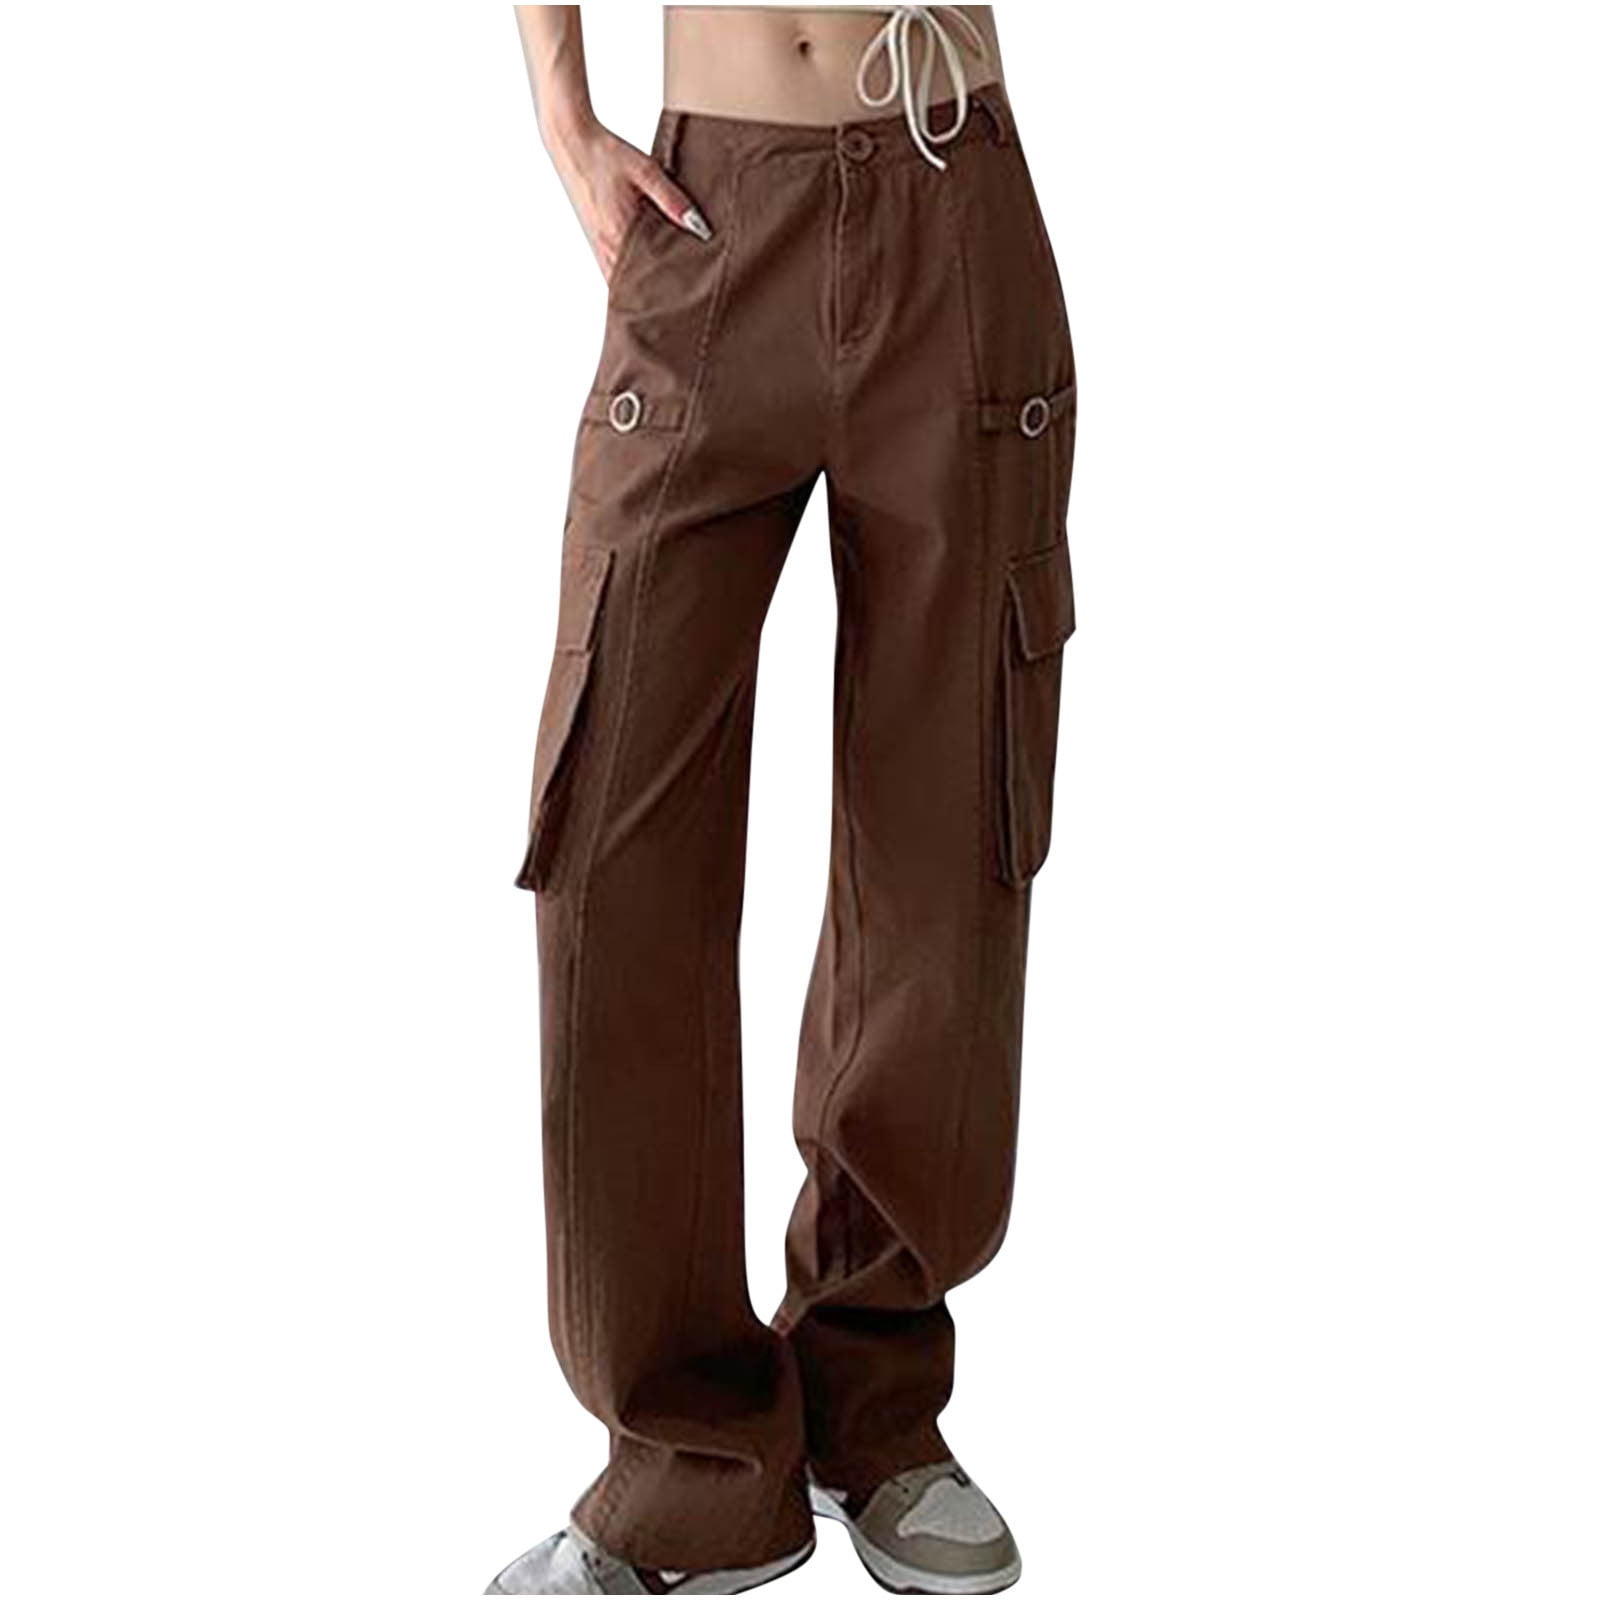 Xflwam Women's High Waist Cargo Jeans Flap Pocket Baggy Cargo Pants Y2K Wide Leg Denim Jeans Straight Casual Loose Streetwear Pants Pink L, Size